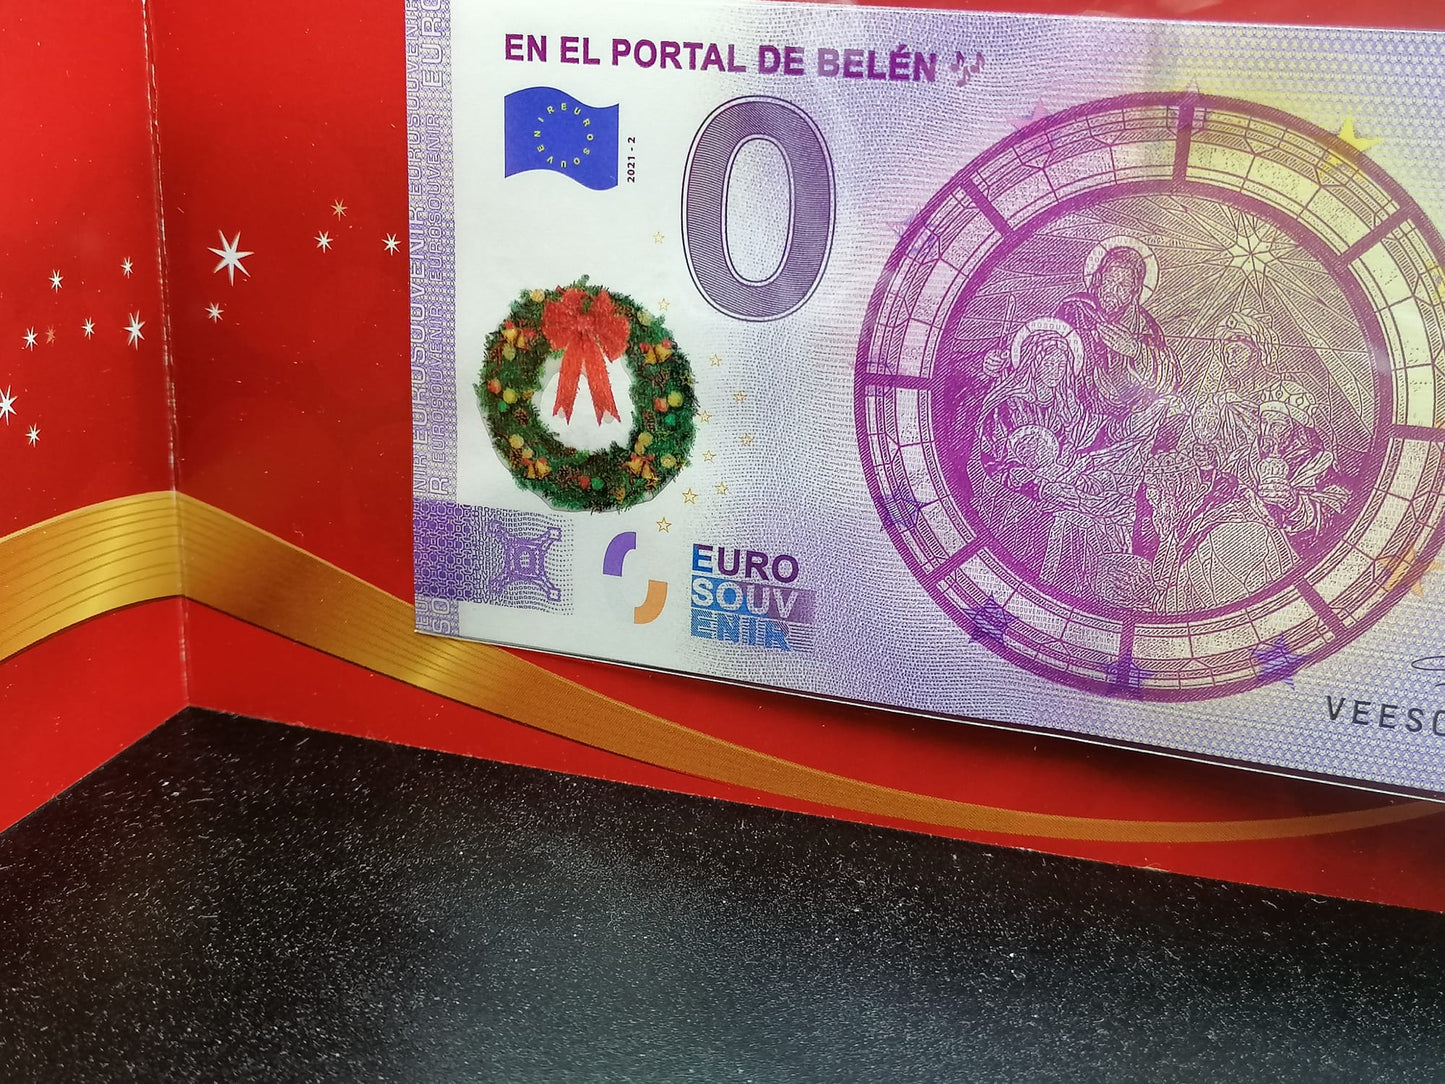 Edición 2021- Portal de Belén sellado relieve corona navideña